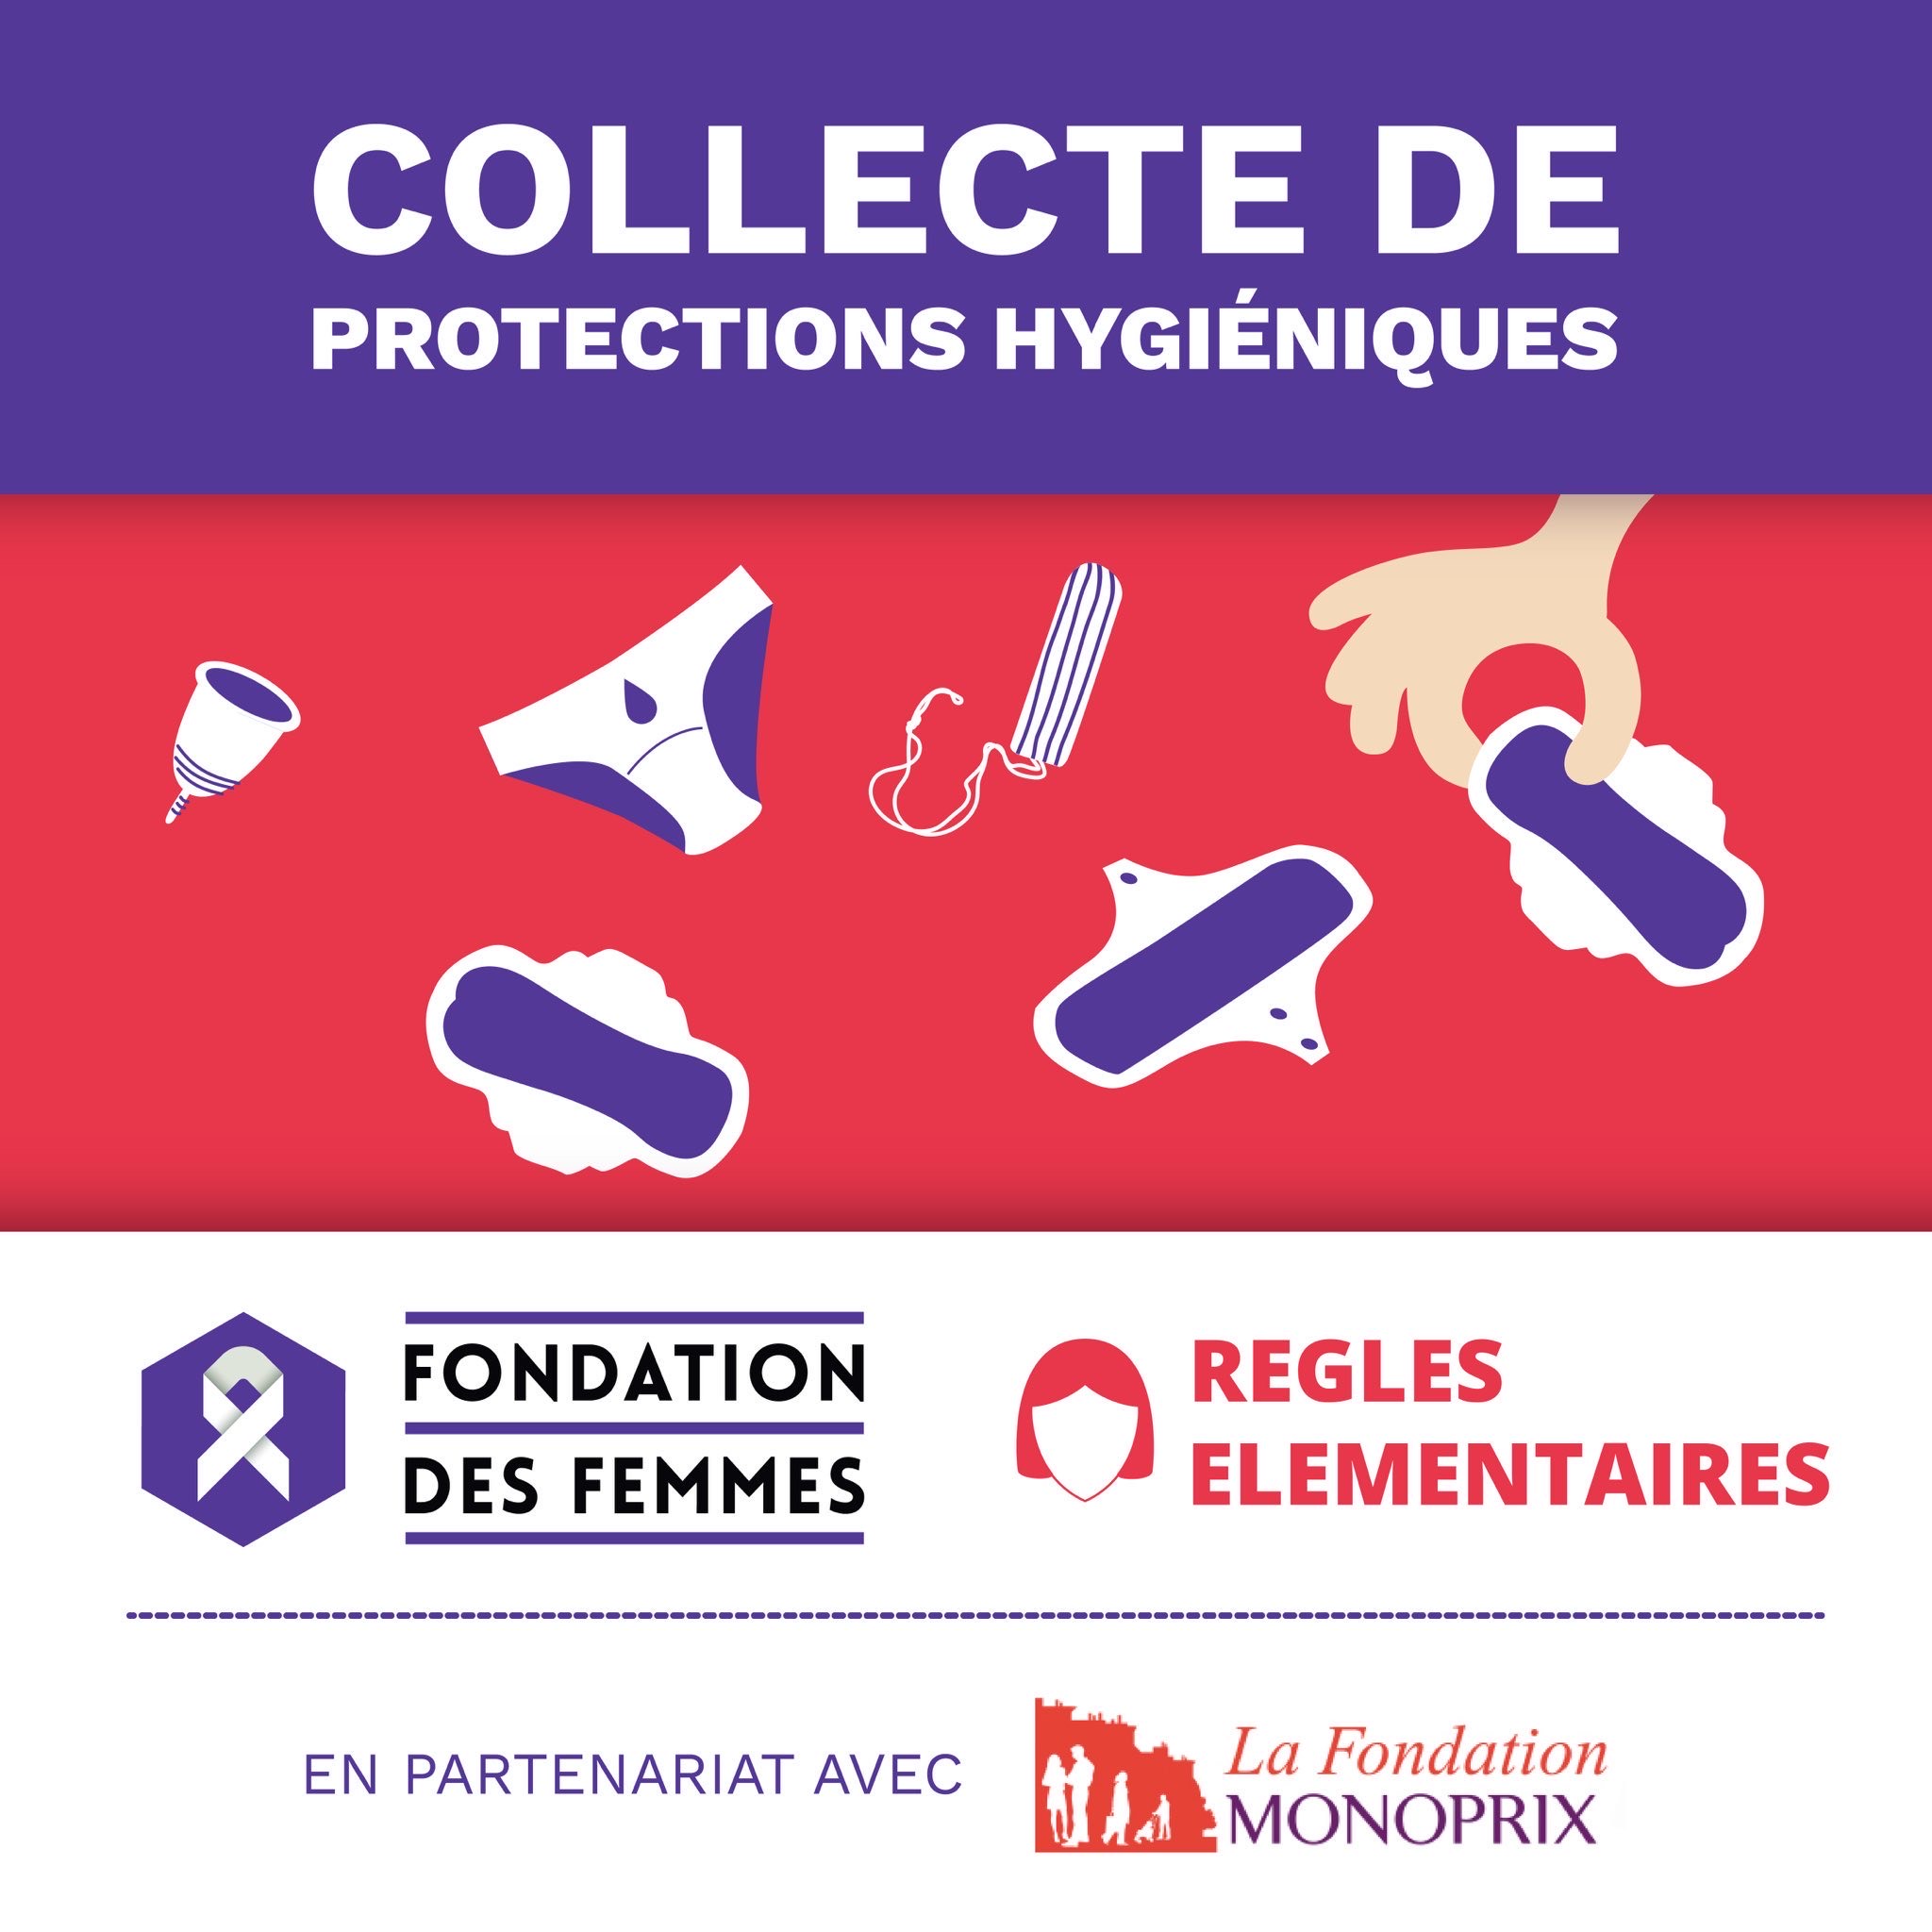 Lire la suite à propos de l’article Collecte de protections périodiques : la Fondation des Femmes s’associe à Règles Elémentaires pour lutter contre la précarité menstruelle des femmes en France